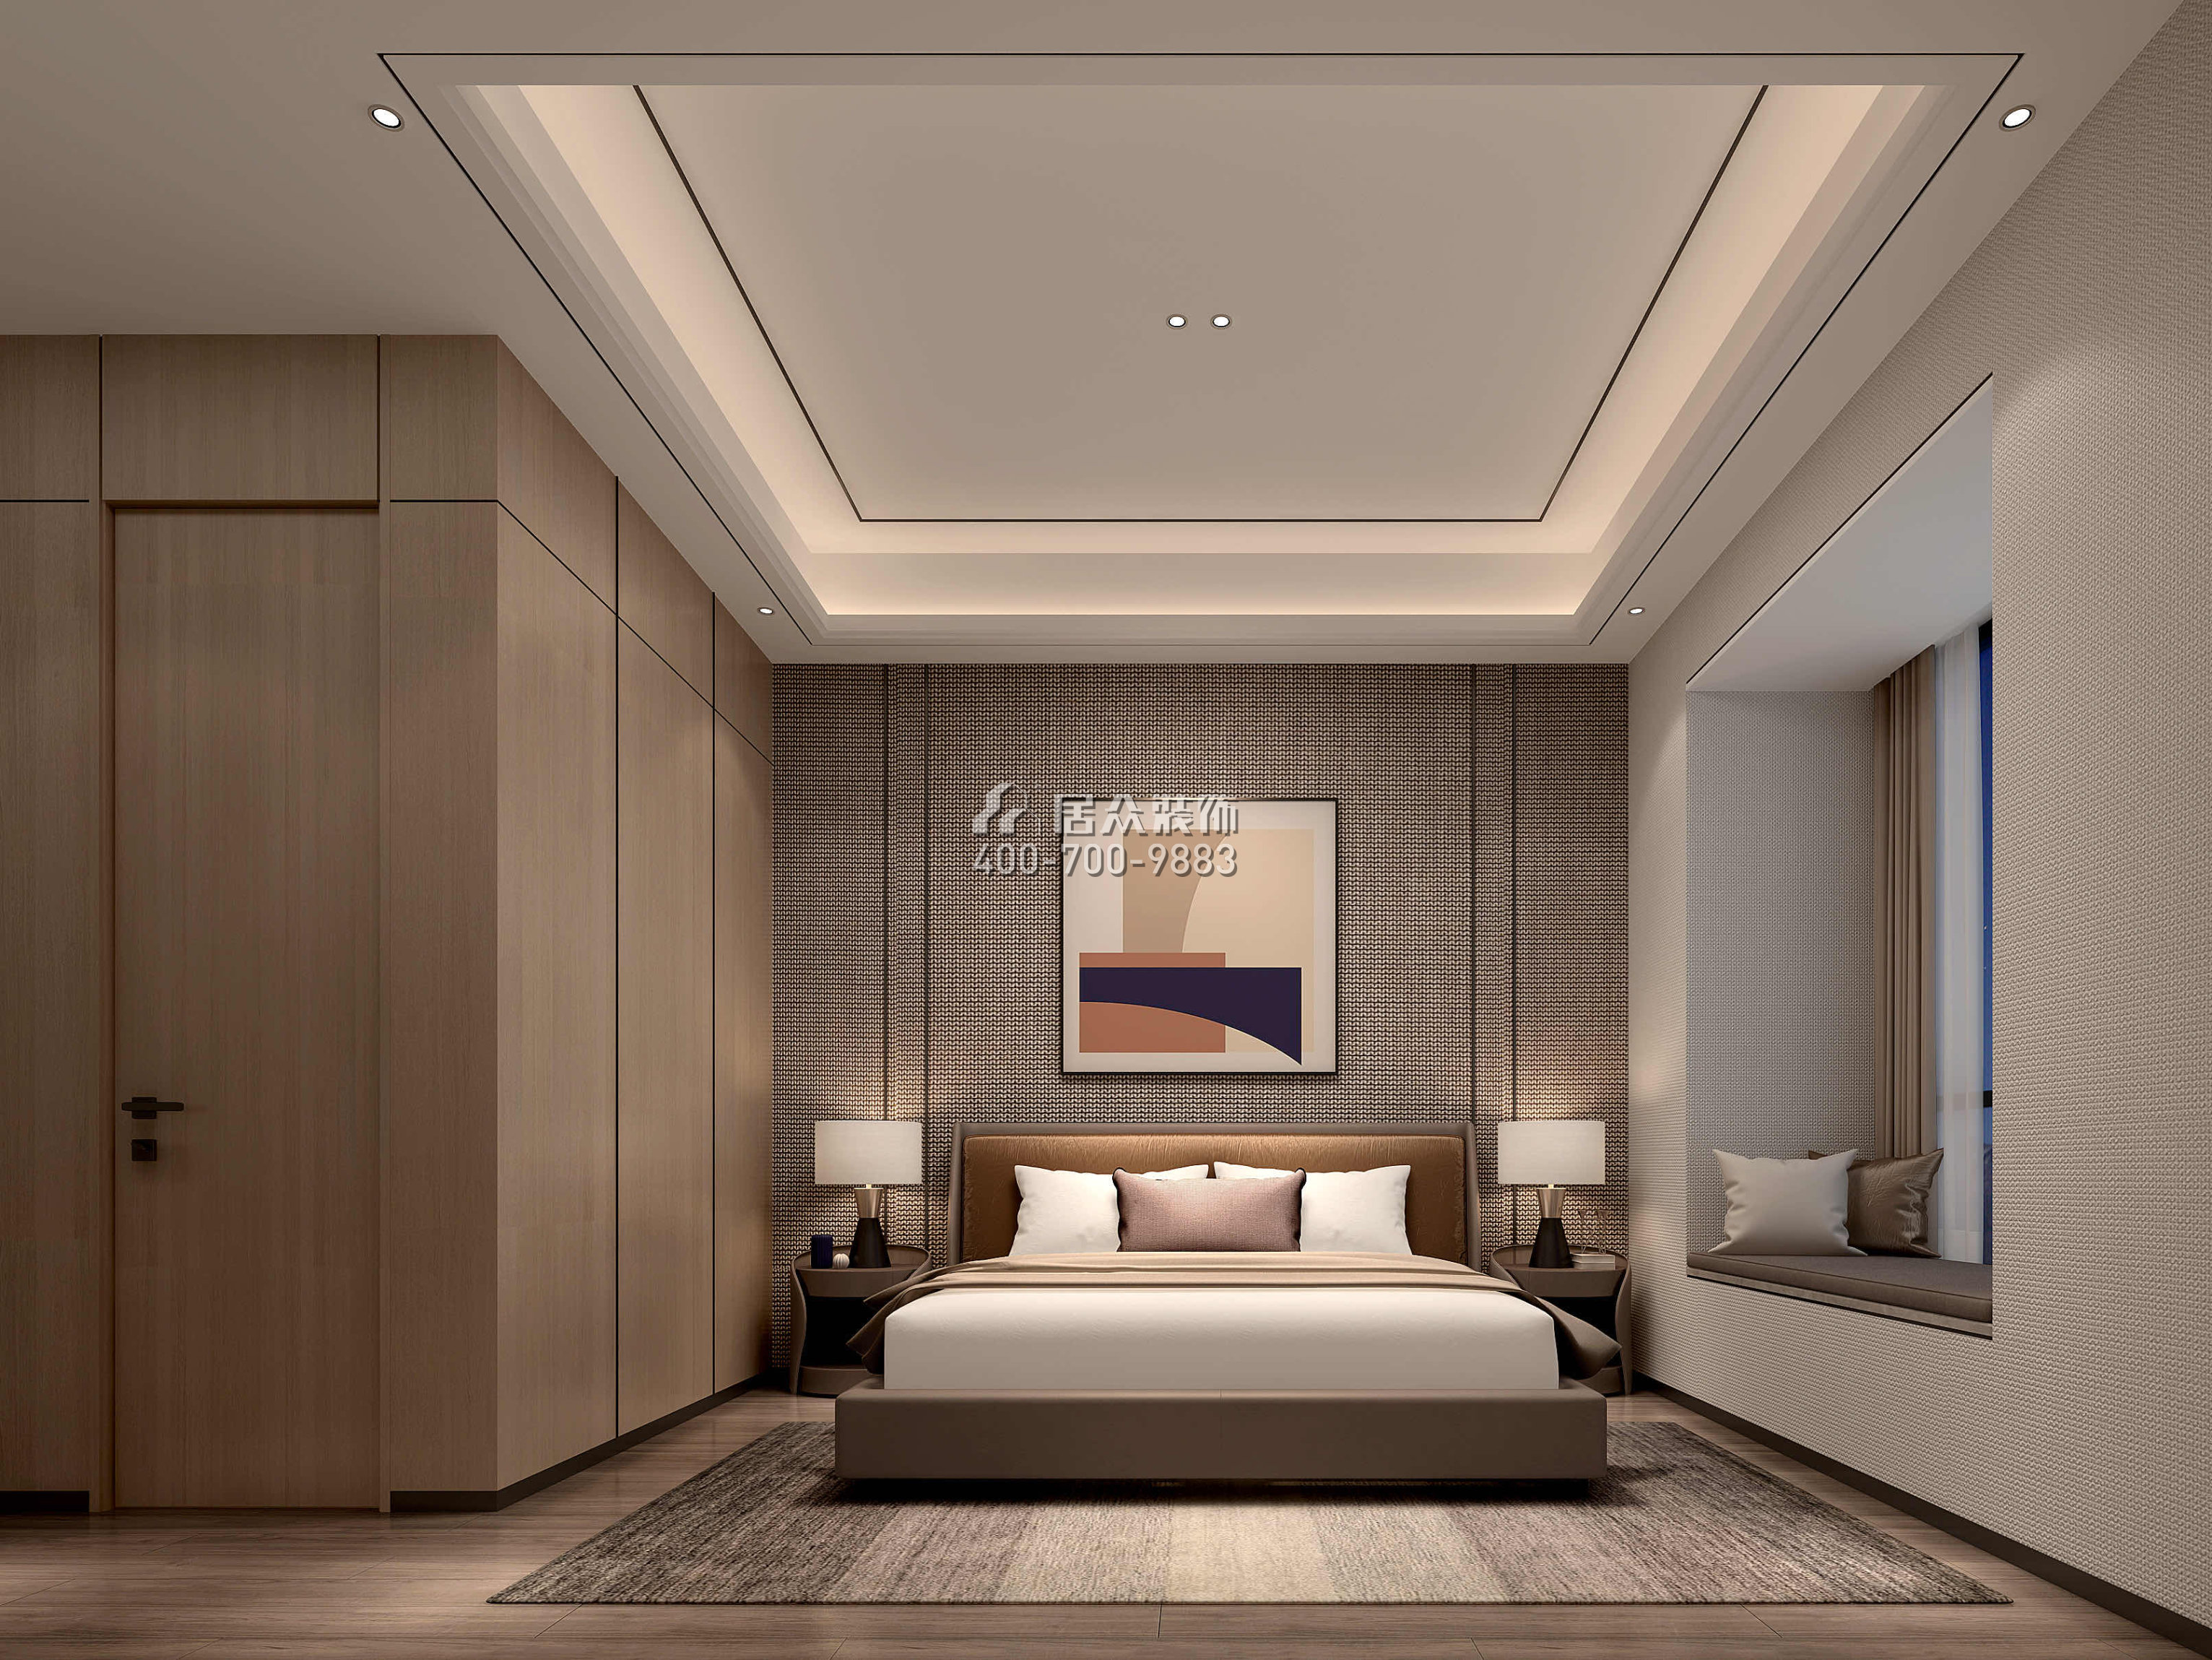 海逸豪庭366平方米现代简约风格别墅户型卧室装修效果图